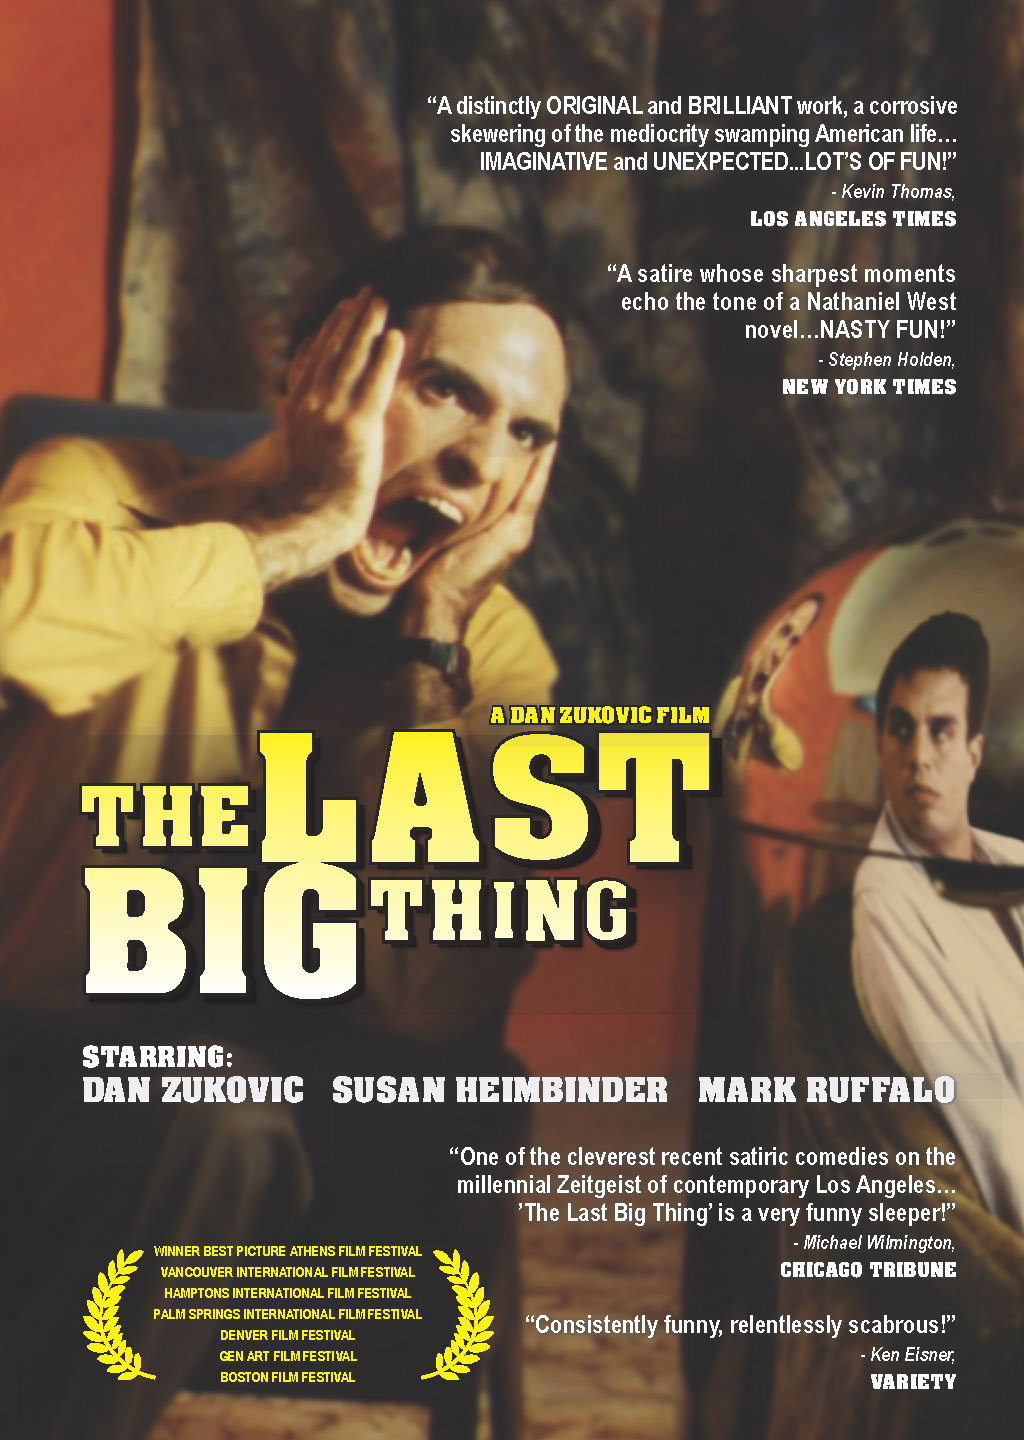 مارک روفالو در صحنه فیلم سینمایی The Last Big Thing به همراه Dan Zukovic